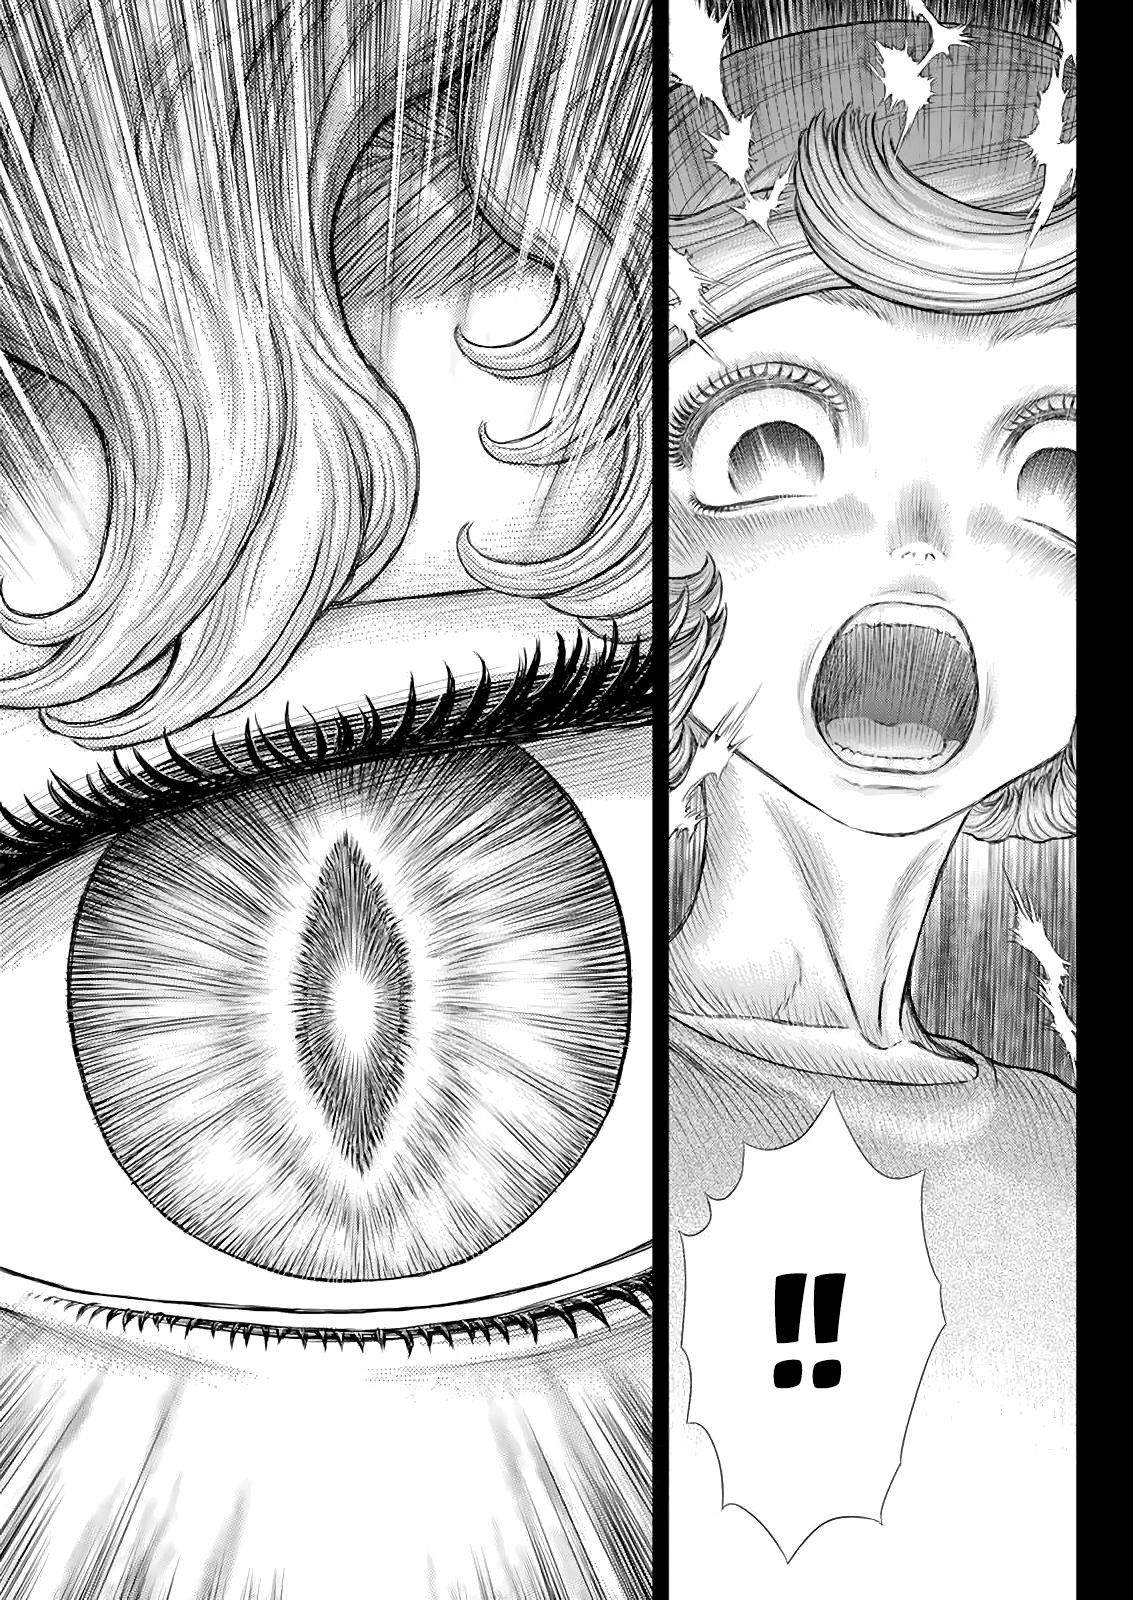 Berserk Manga Chapter 365 image 11